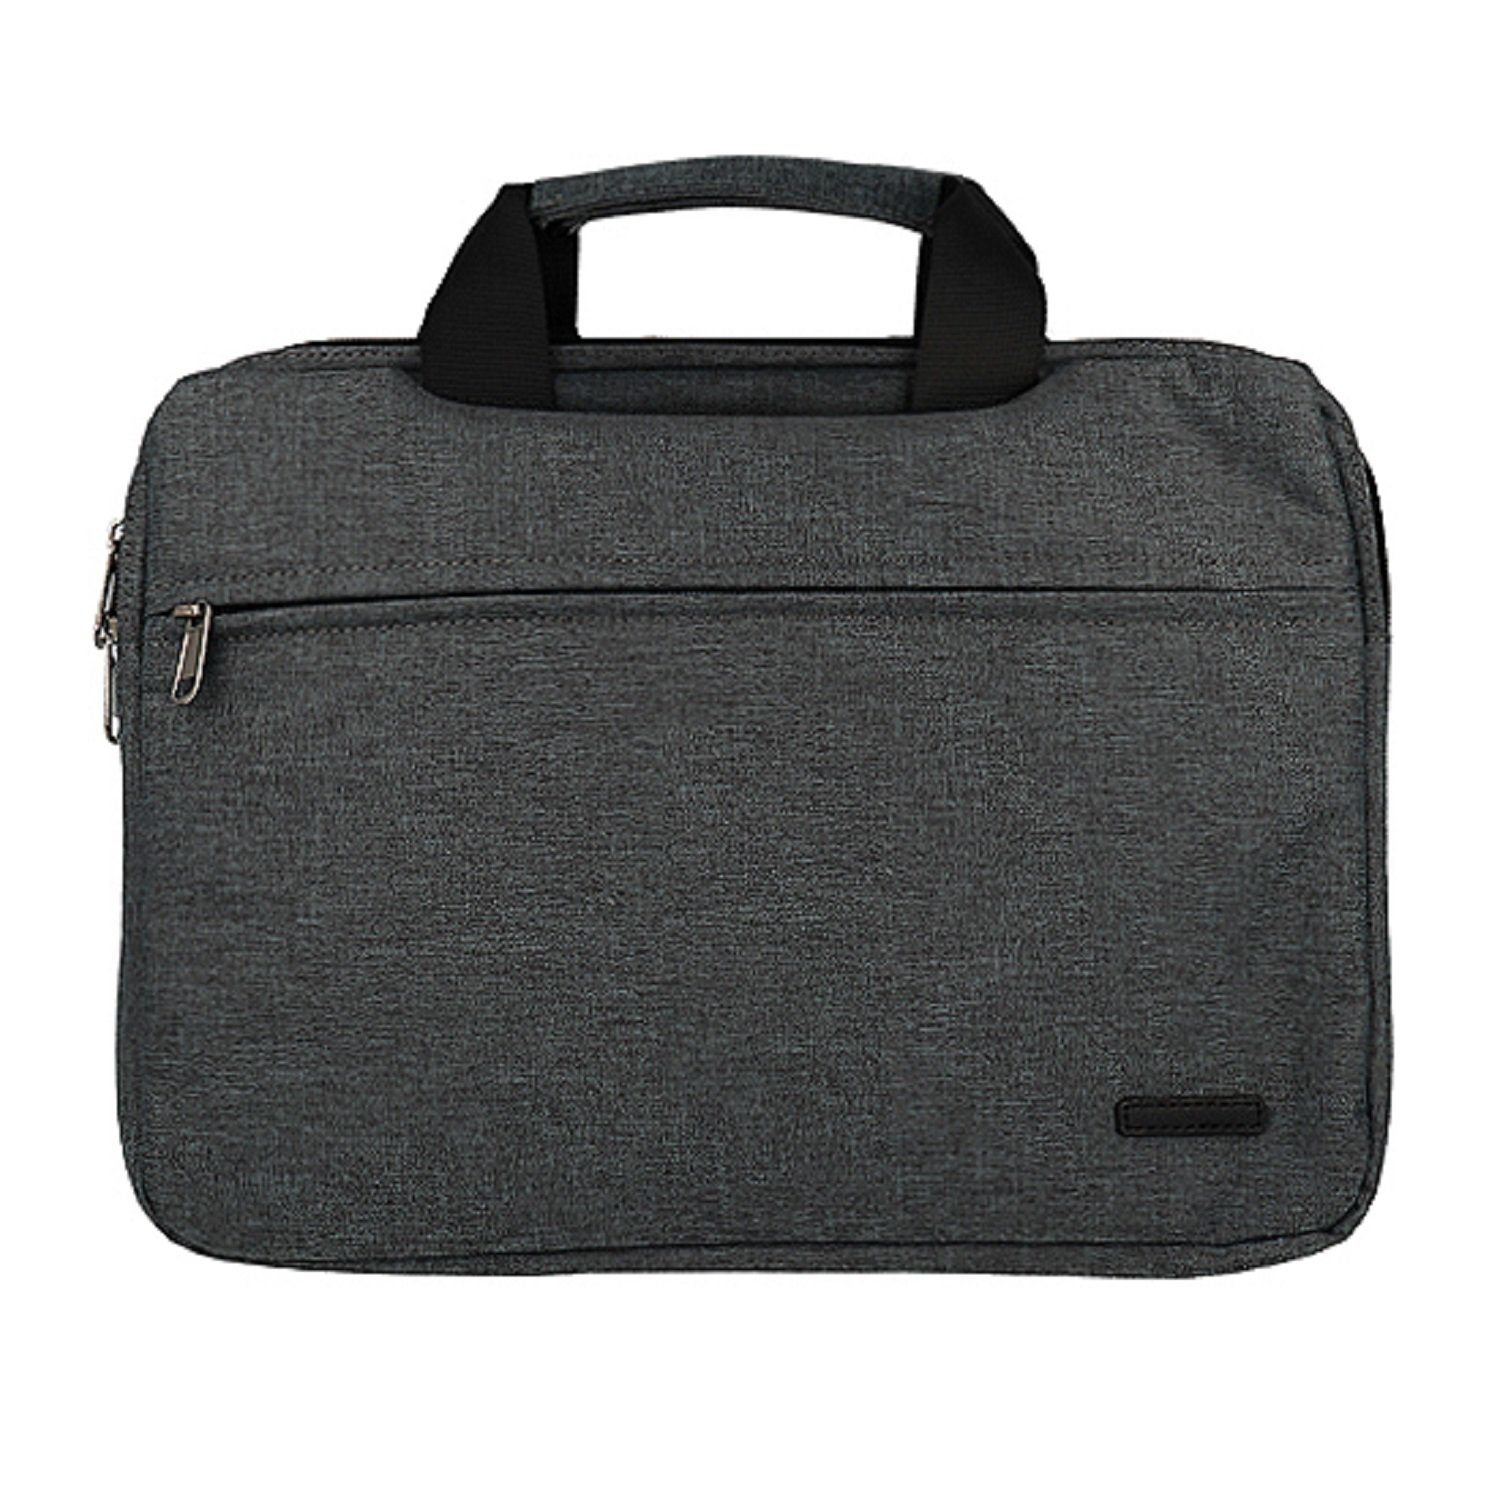 cofi1453 Laptoptasche Laptop Notebook Tasche MODERN mit Handgriff  Schutztasche Bag Tablet Slim